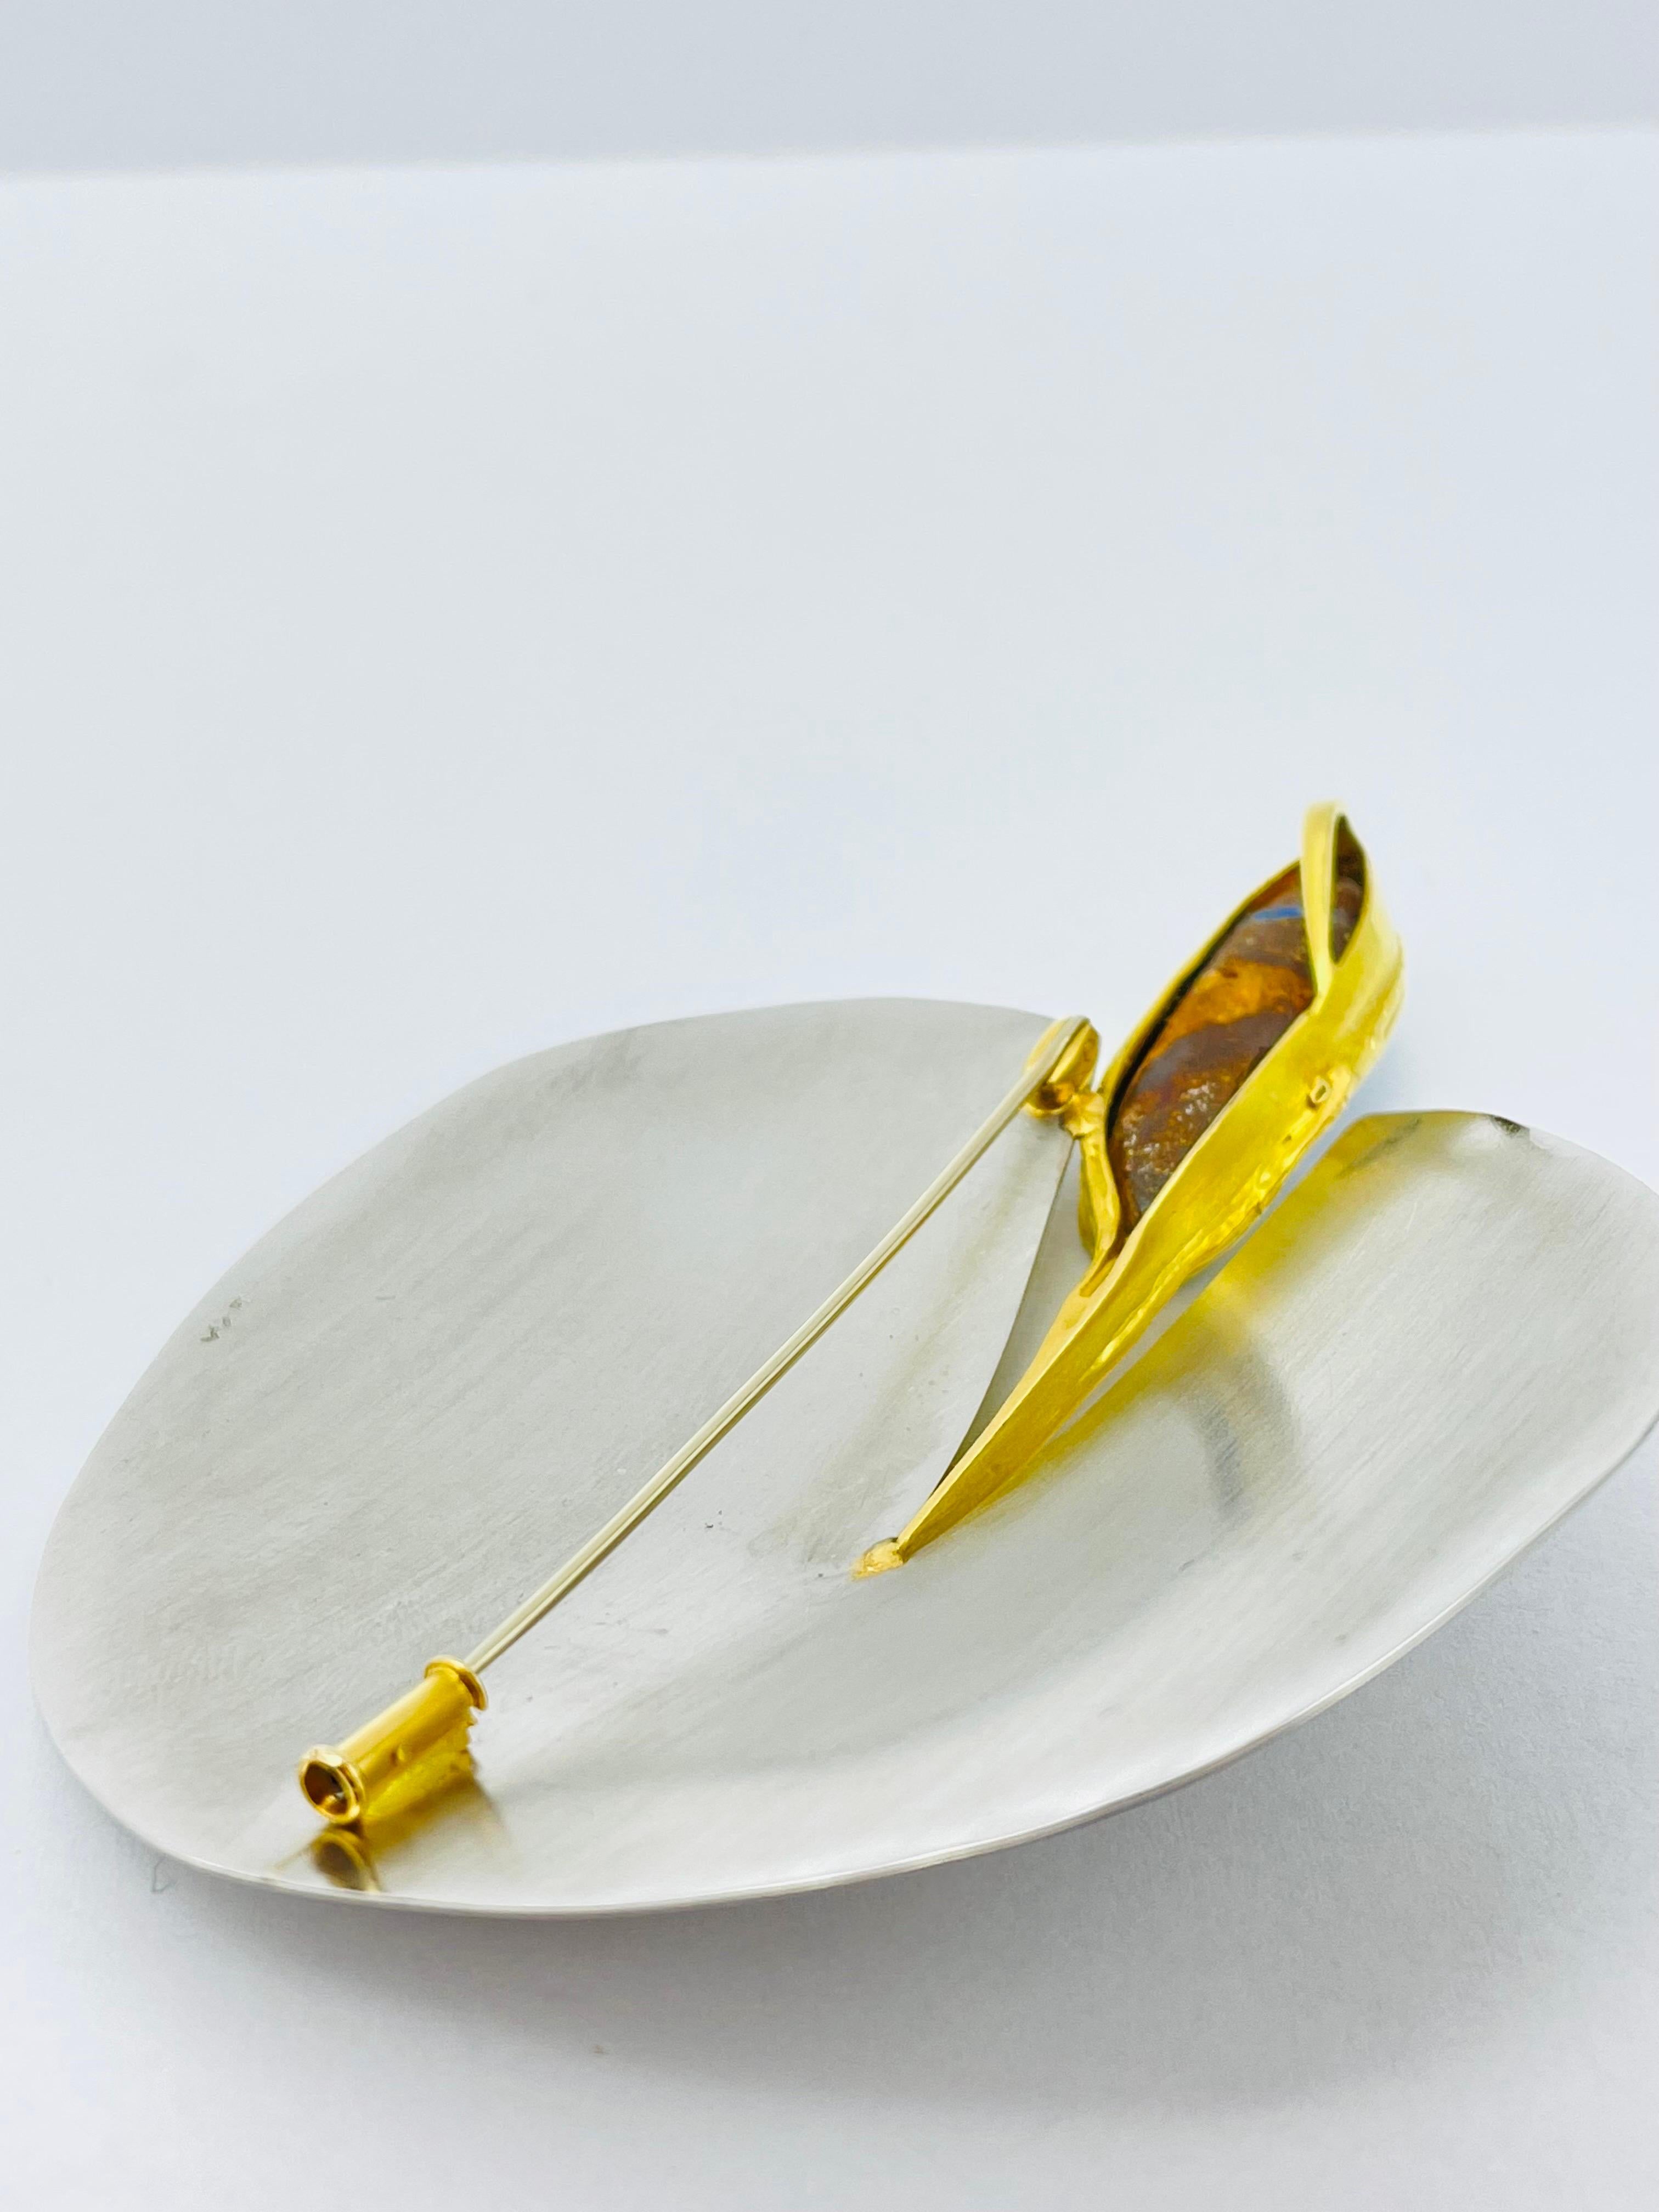 Bicolor Platinum/18k Gold Brooch-Pendant with Australian Opal, Unique For Sale 6